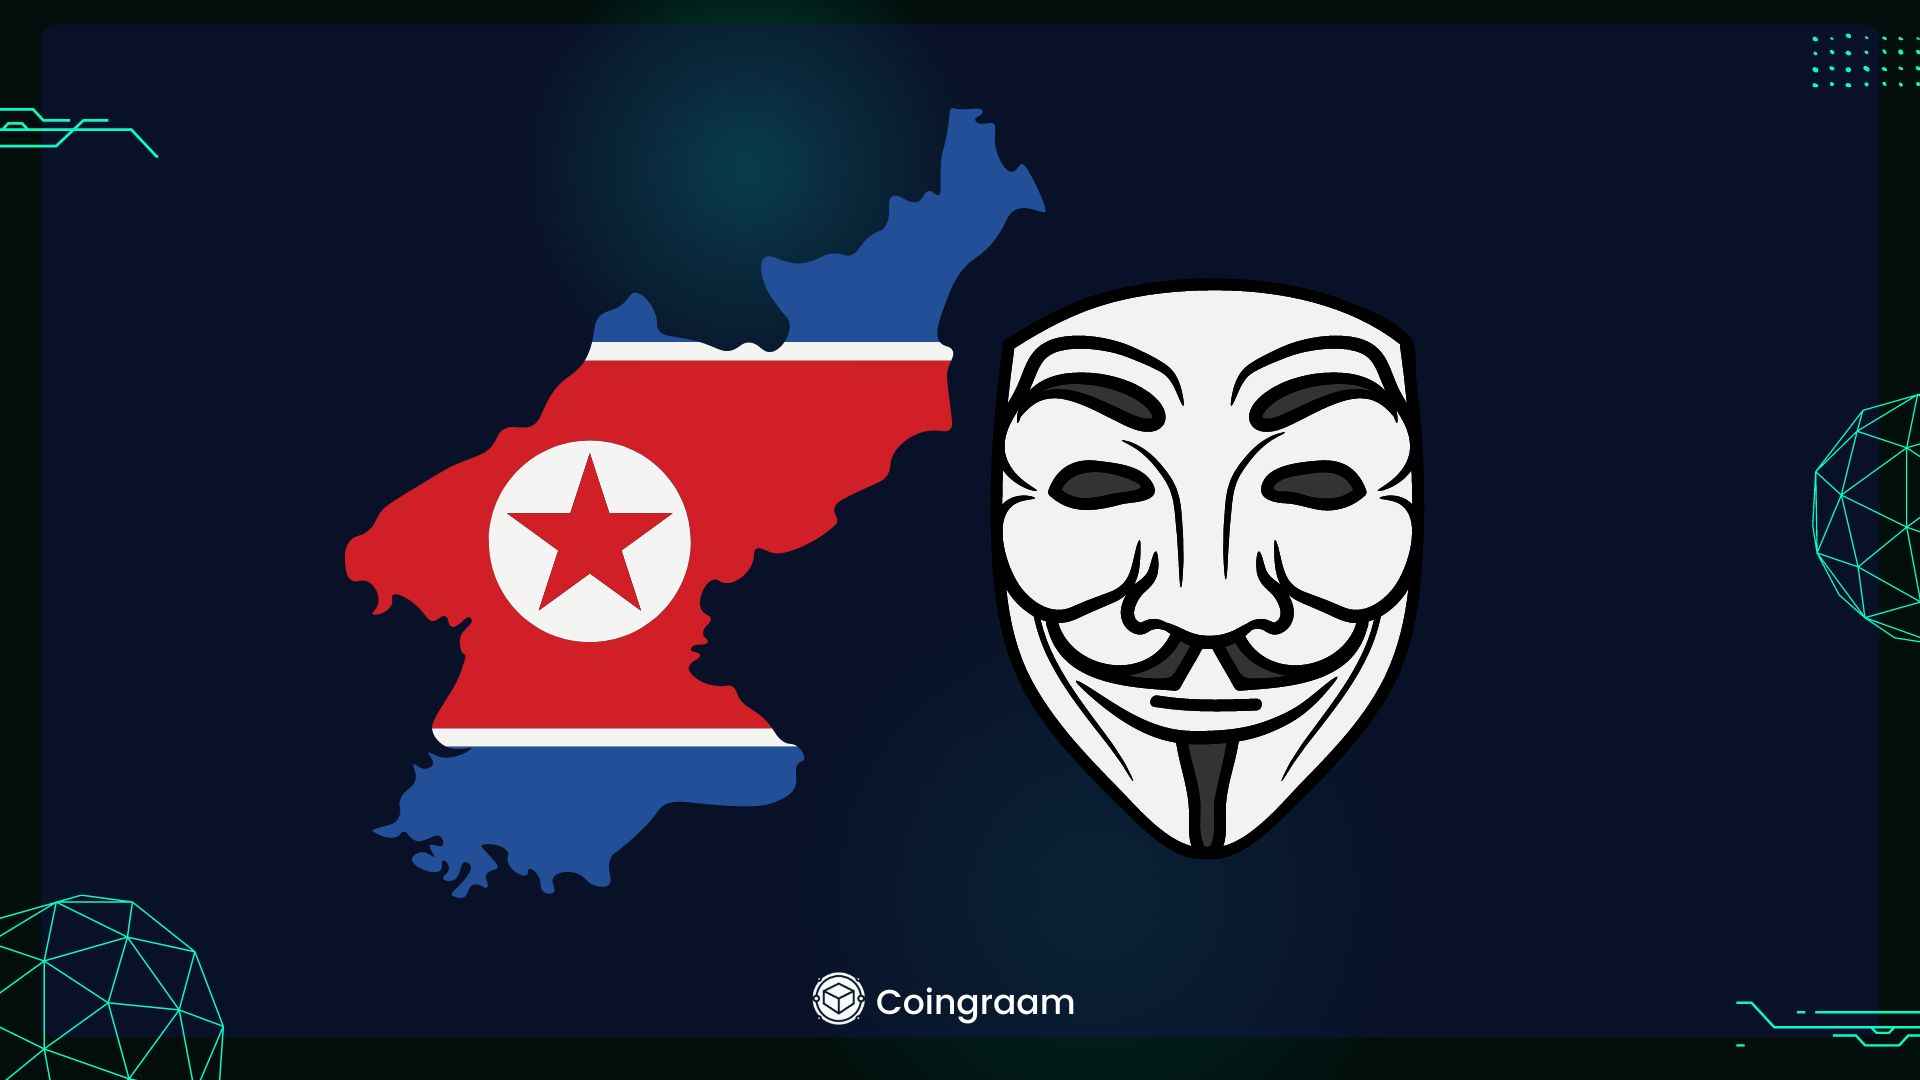 گروه هکری لازاروس کره شمالی با هک ۱۰۰ میلیون دلار ارز دیجیتال دوباره ظهور کرد

